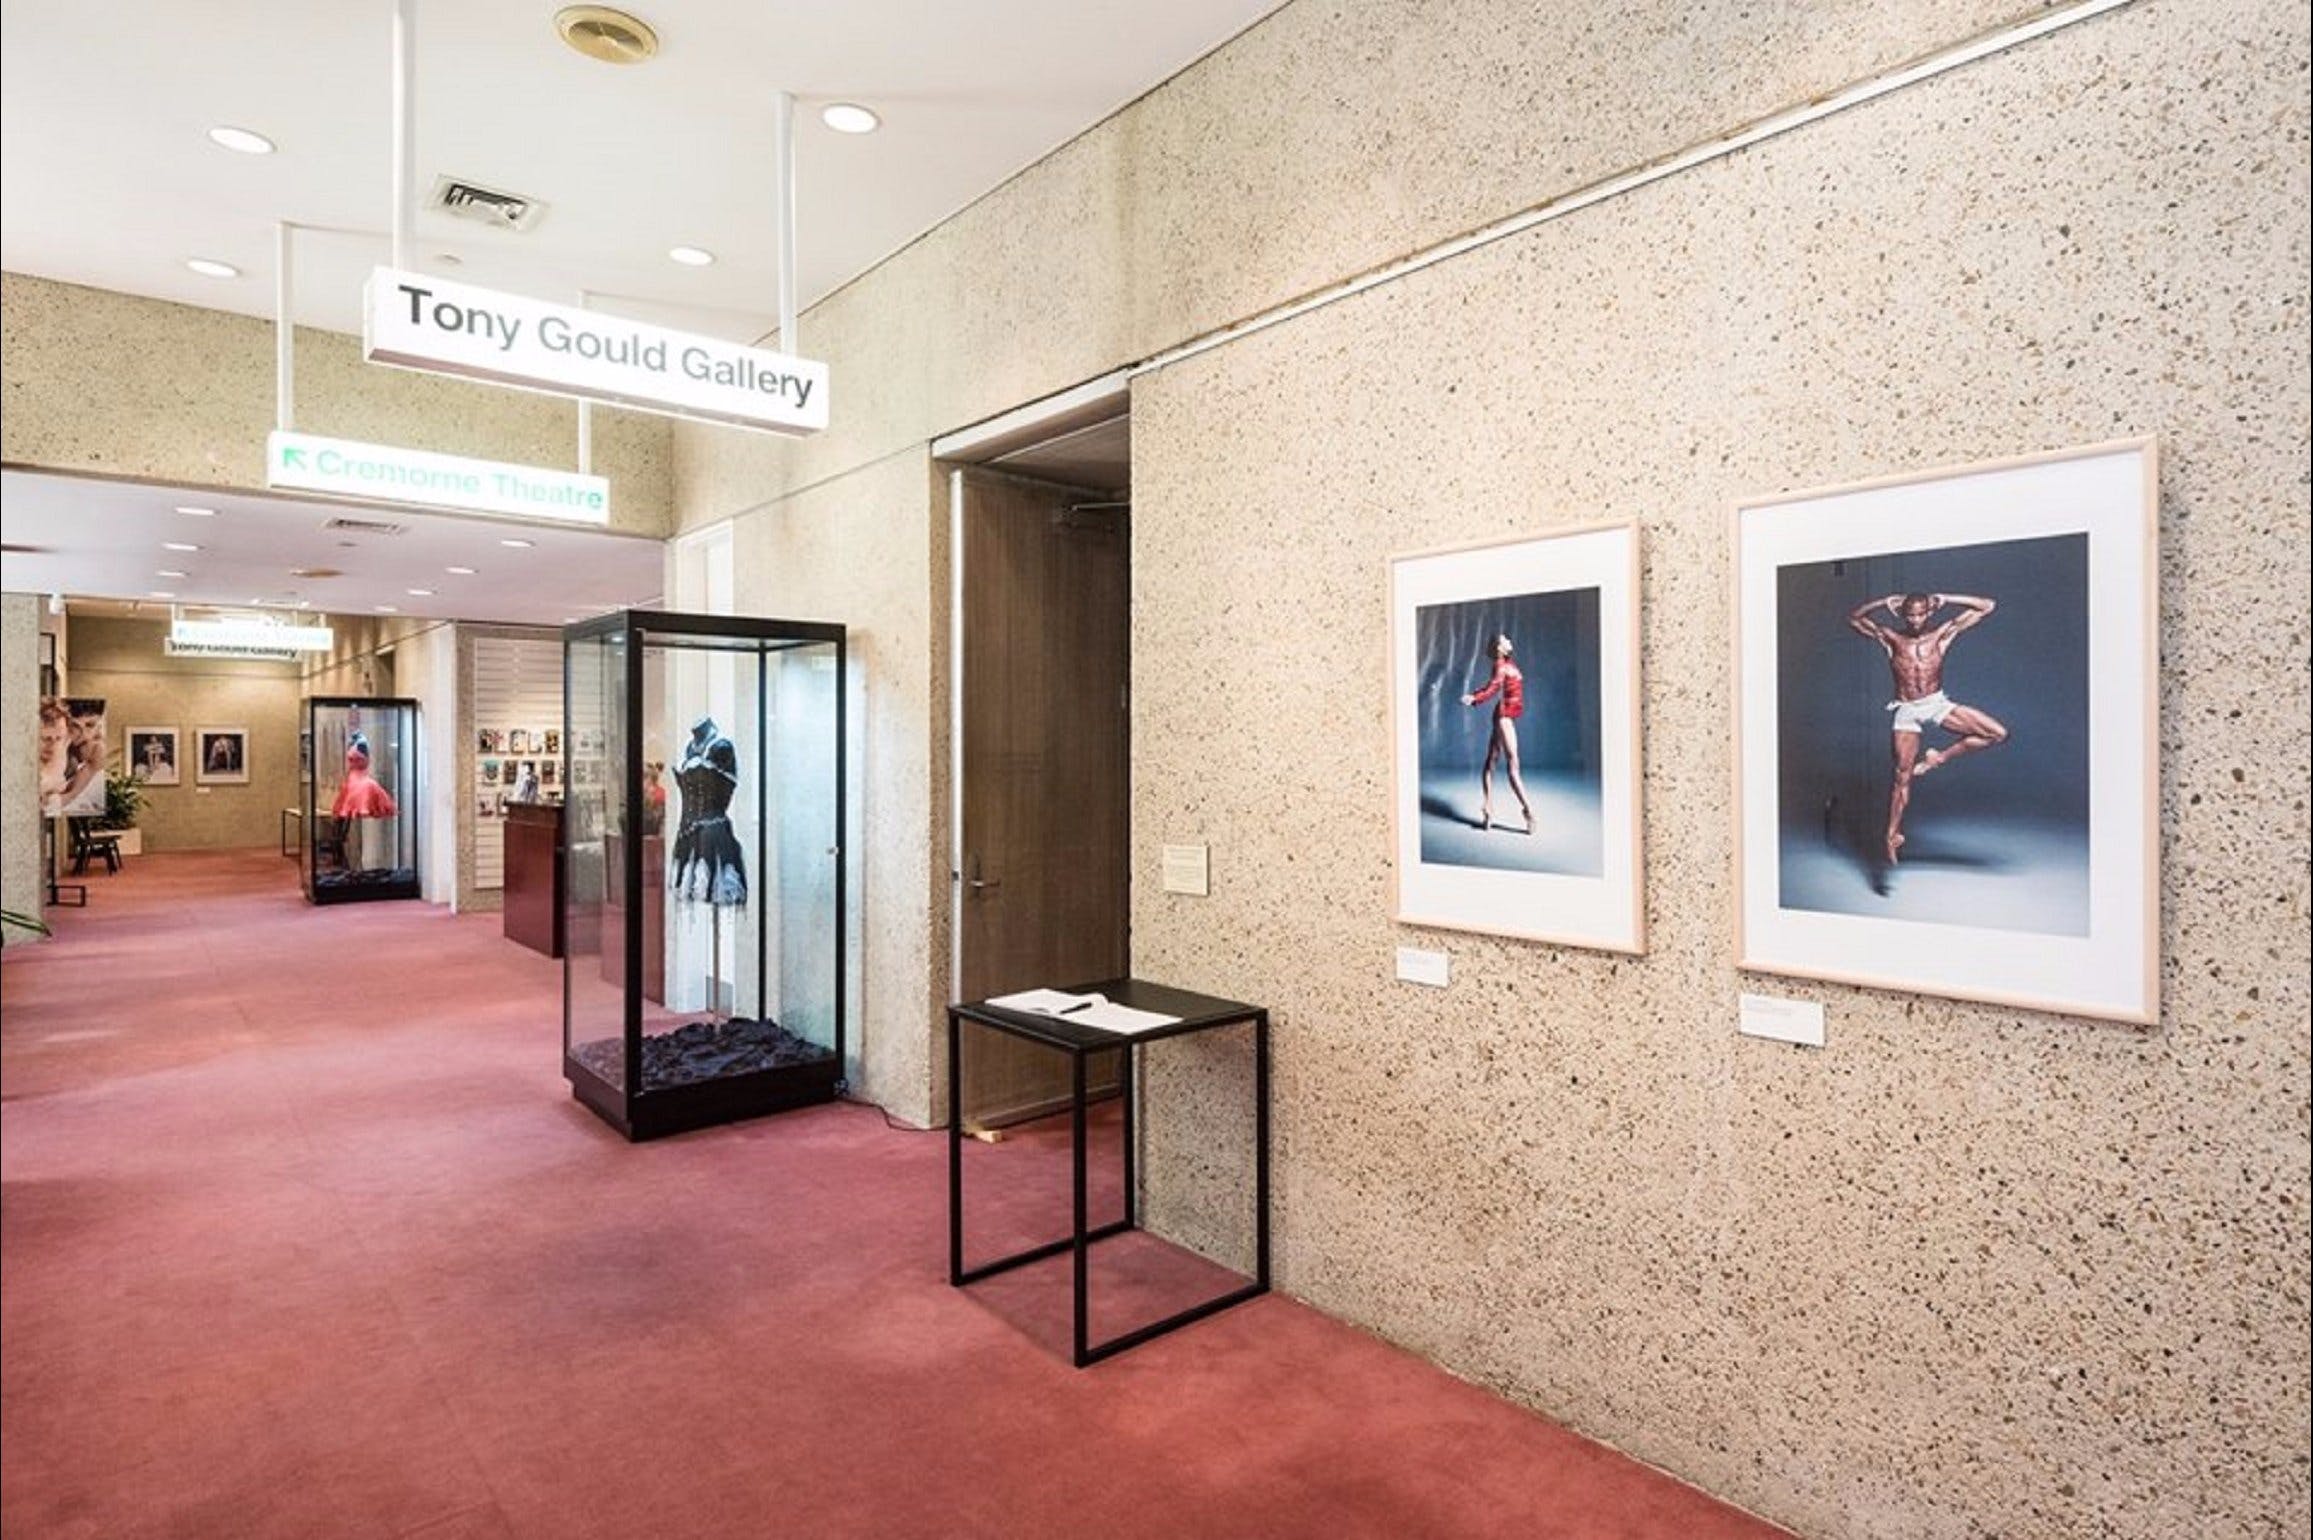 Tony Gould Gallery - Wagga Wagga Accommodation